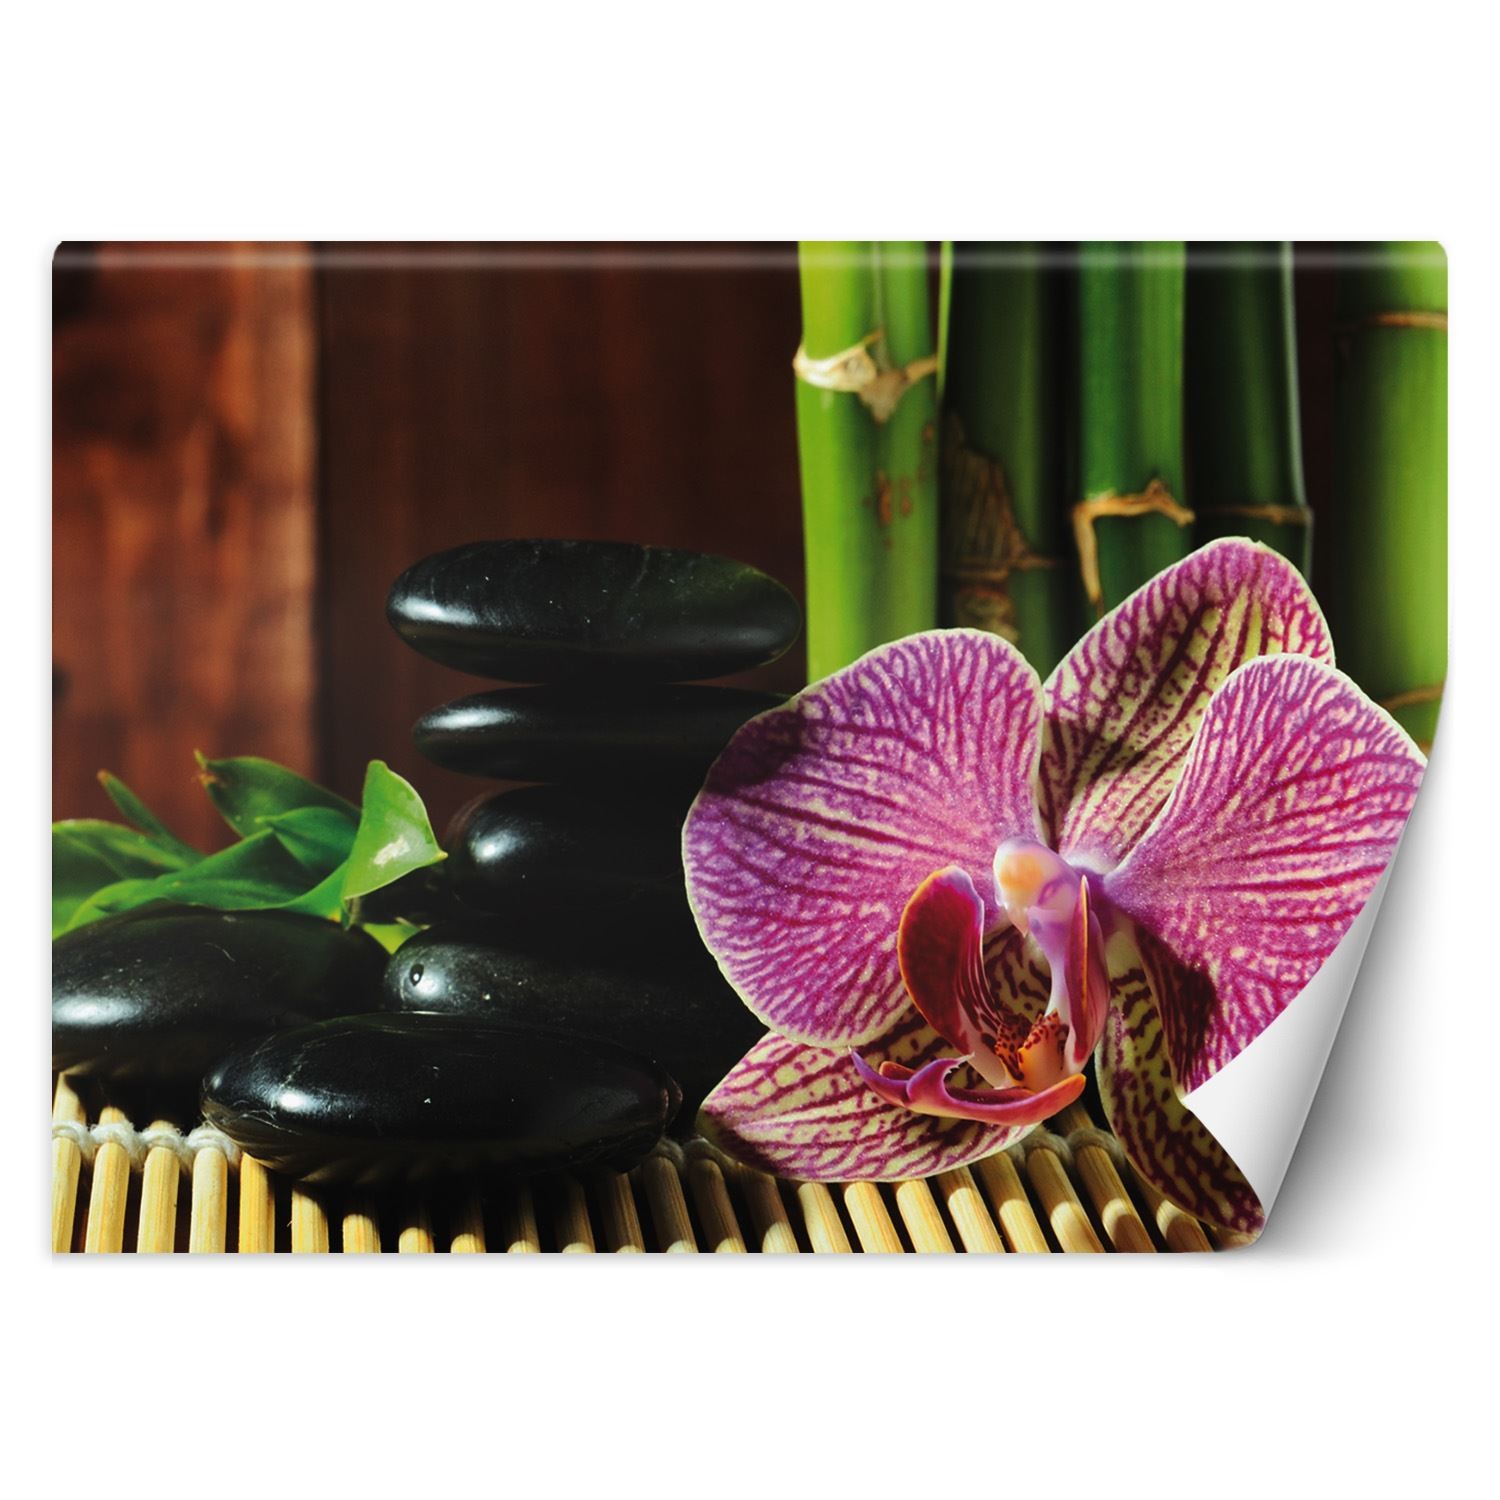 Trend24 – Behang – Orchid – Vliesbehang – Fotobehang – Behang Woonkamer – 350×245 cm – Incl. behanglijm